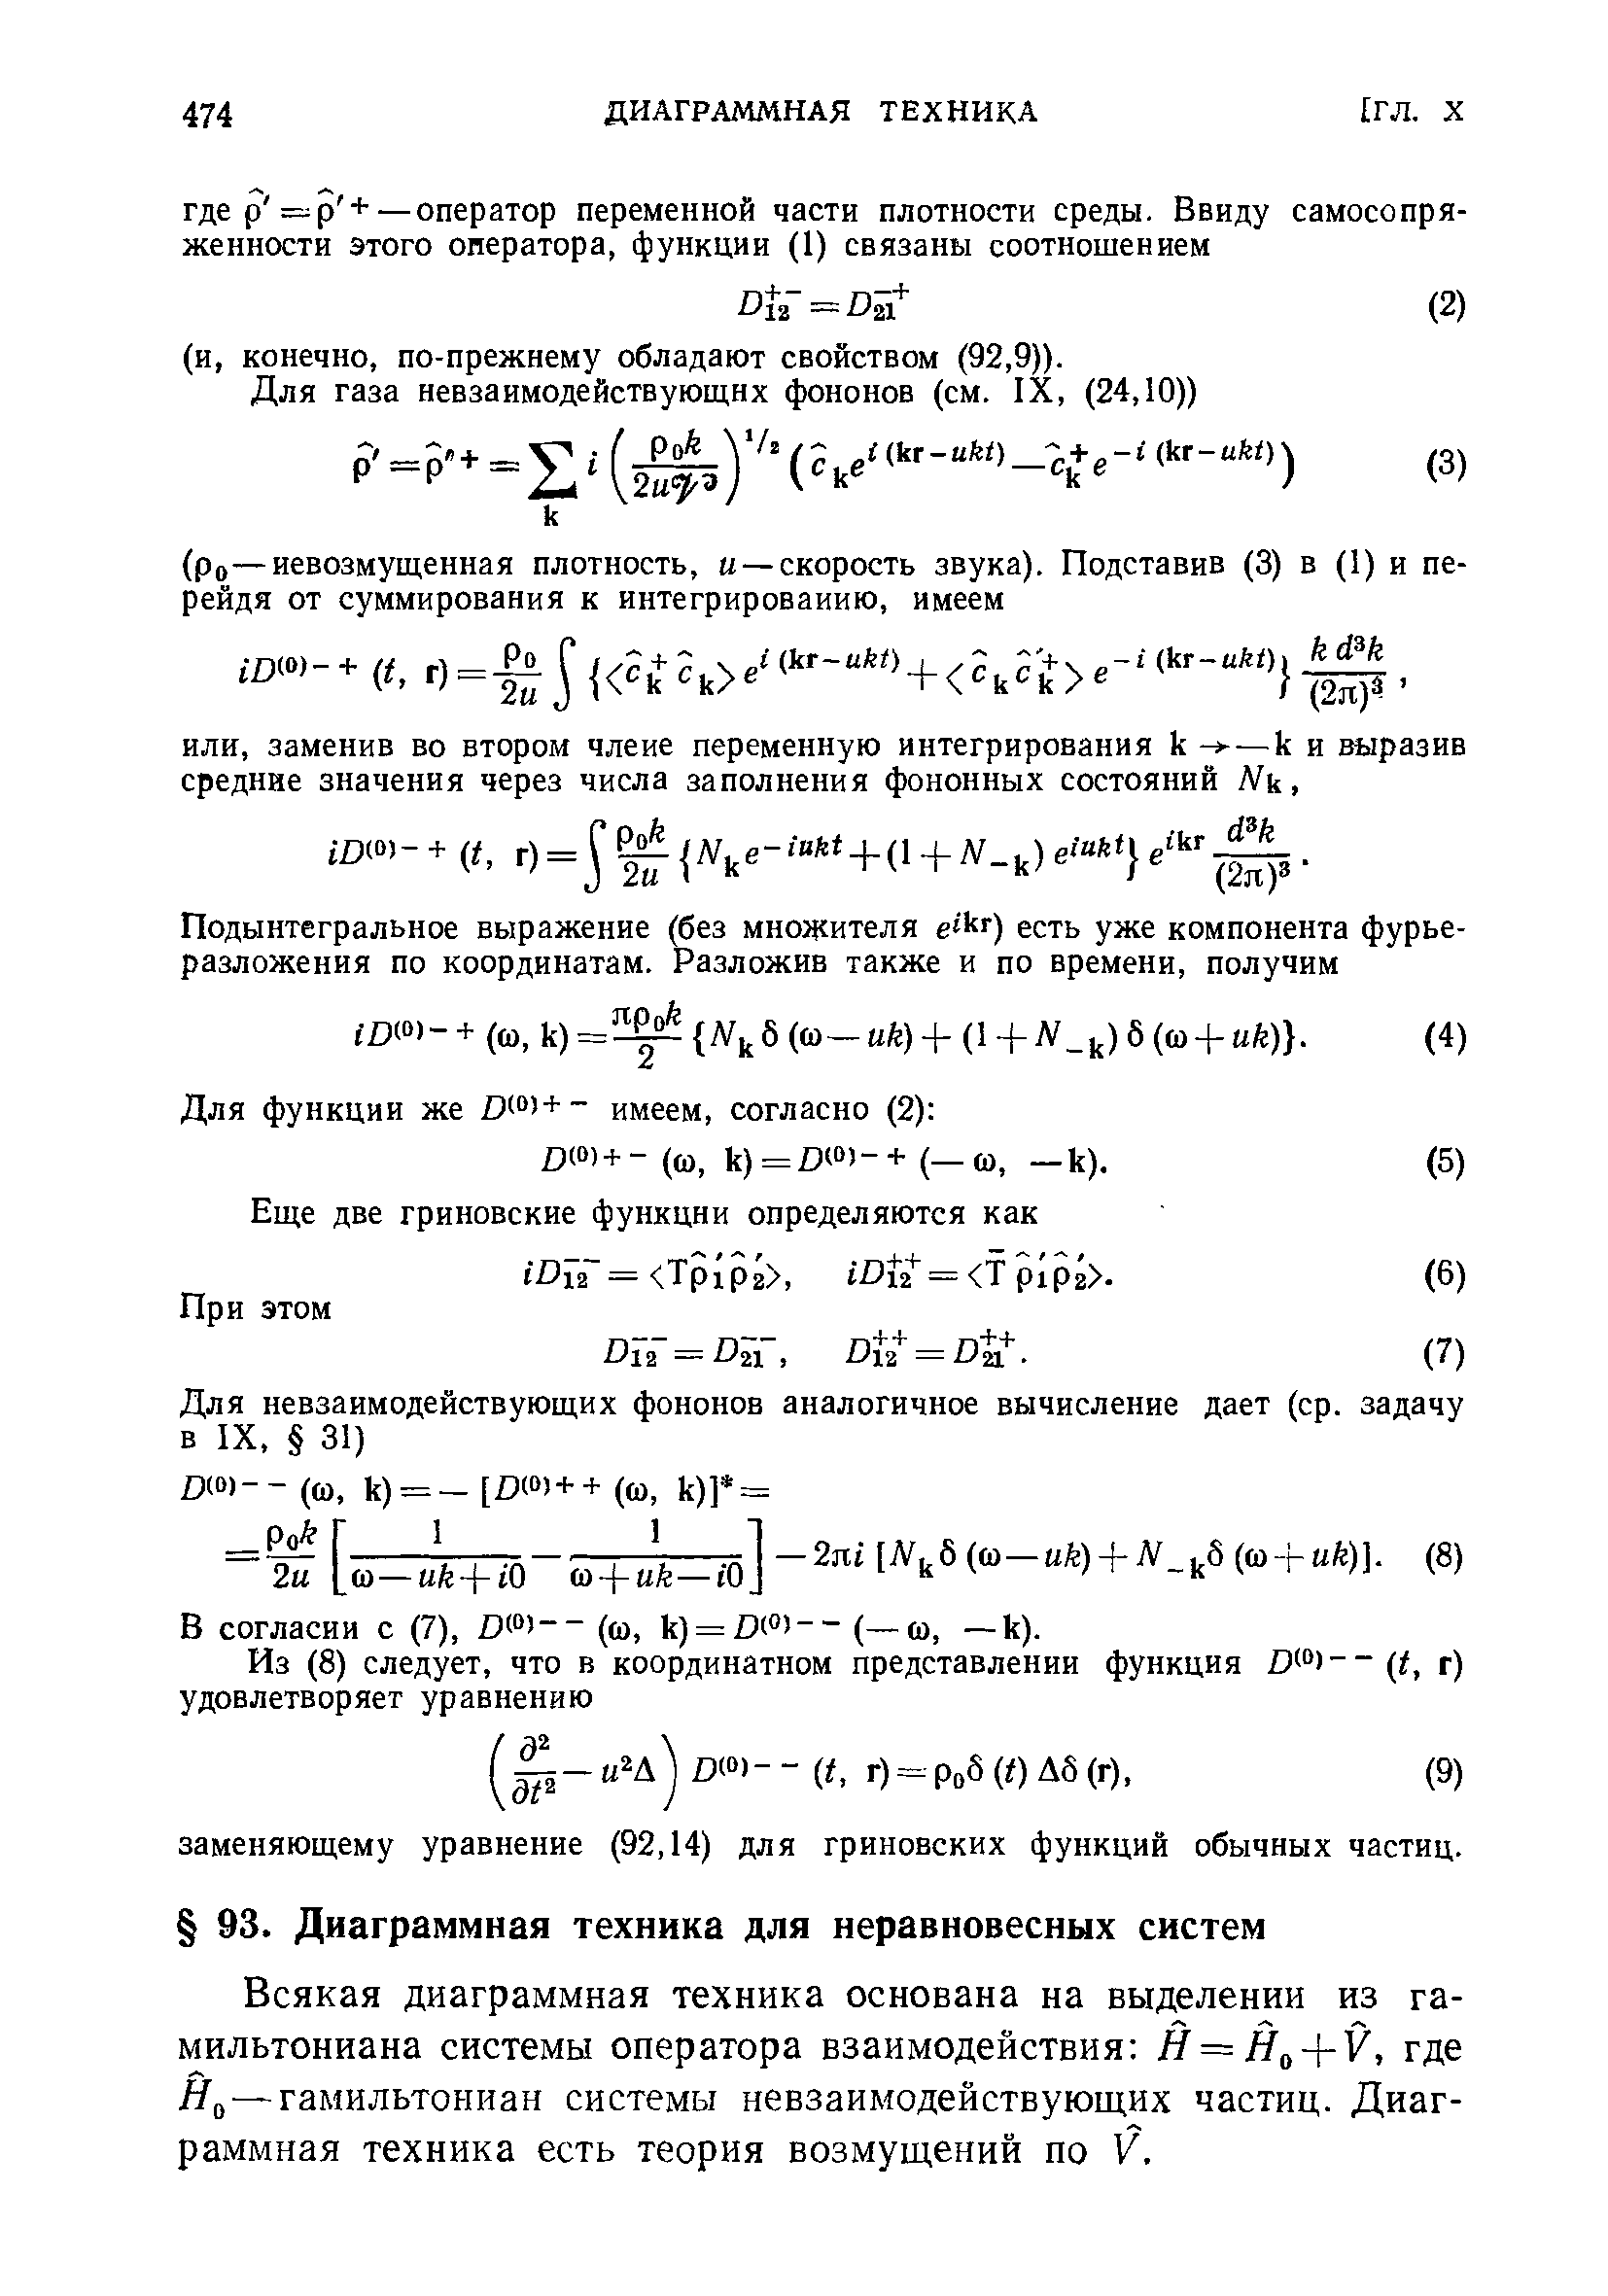 Всякая диаграммная техника основана на выделении из гамильтониана системы оператора взаимодействия Й = Н + У, где Я,) —гамильтониан системы невзаимодействующих частиц. Диаграммная техника есть теория возмущений по V.
